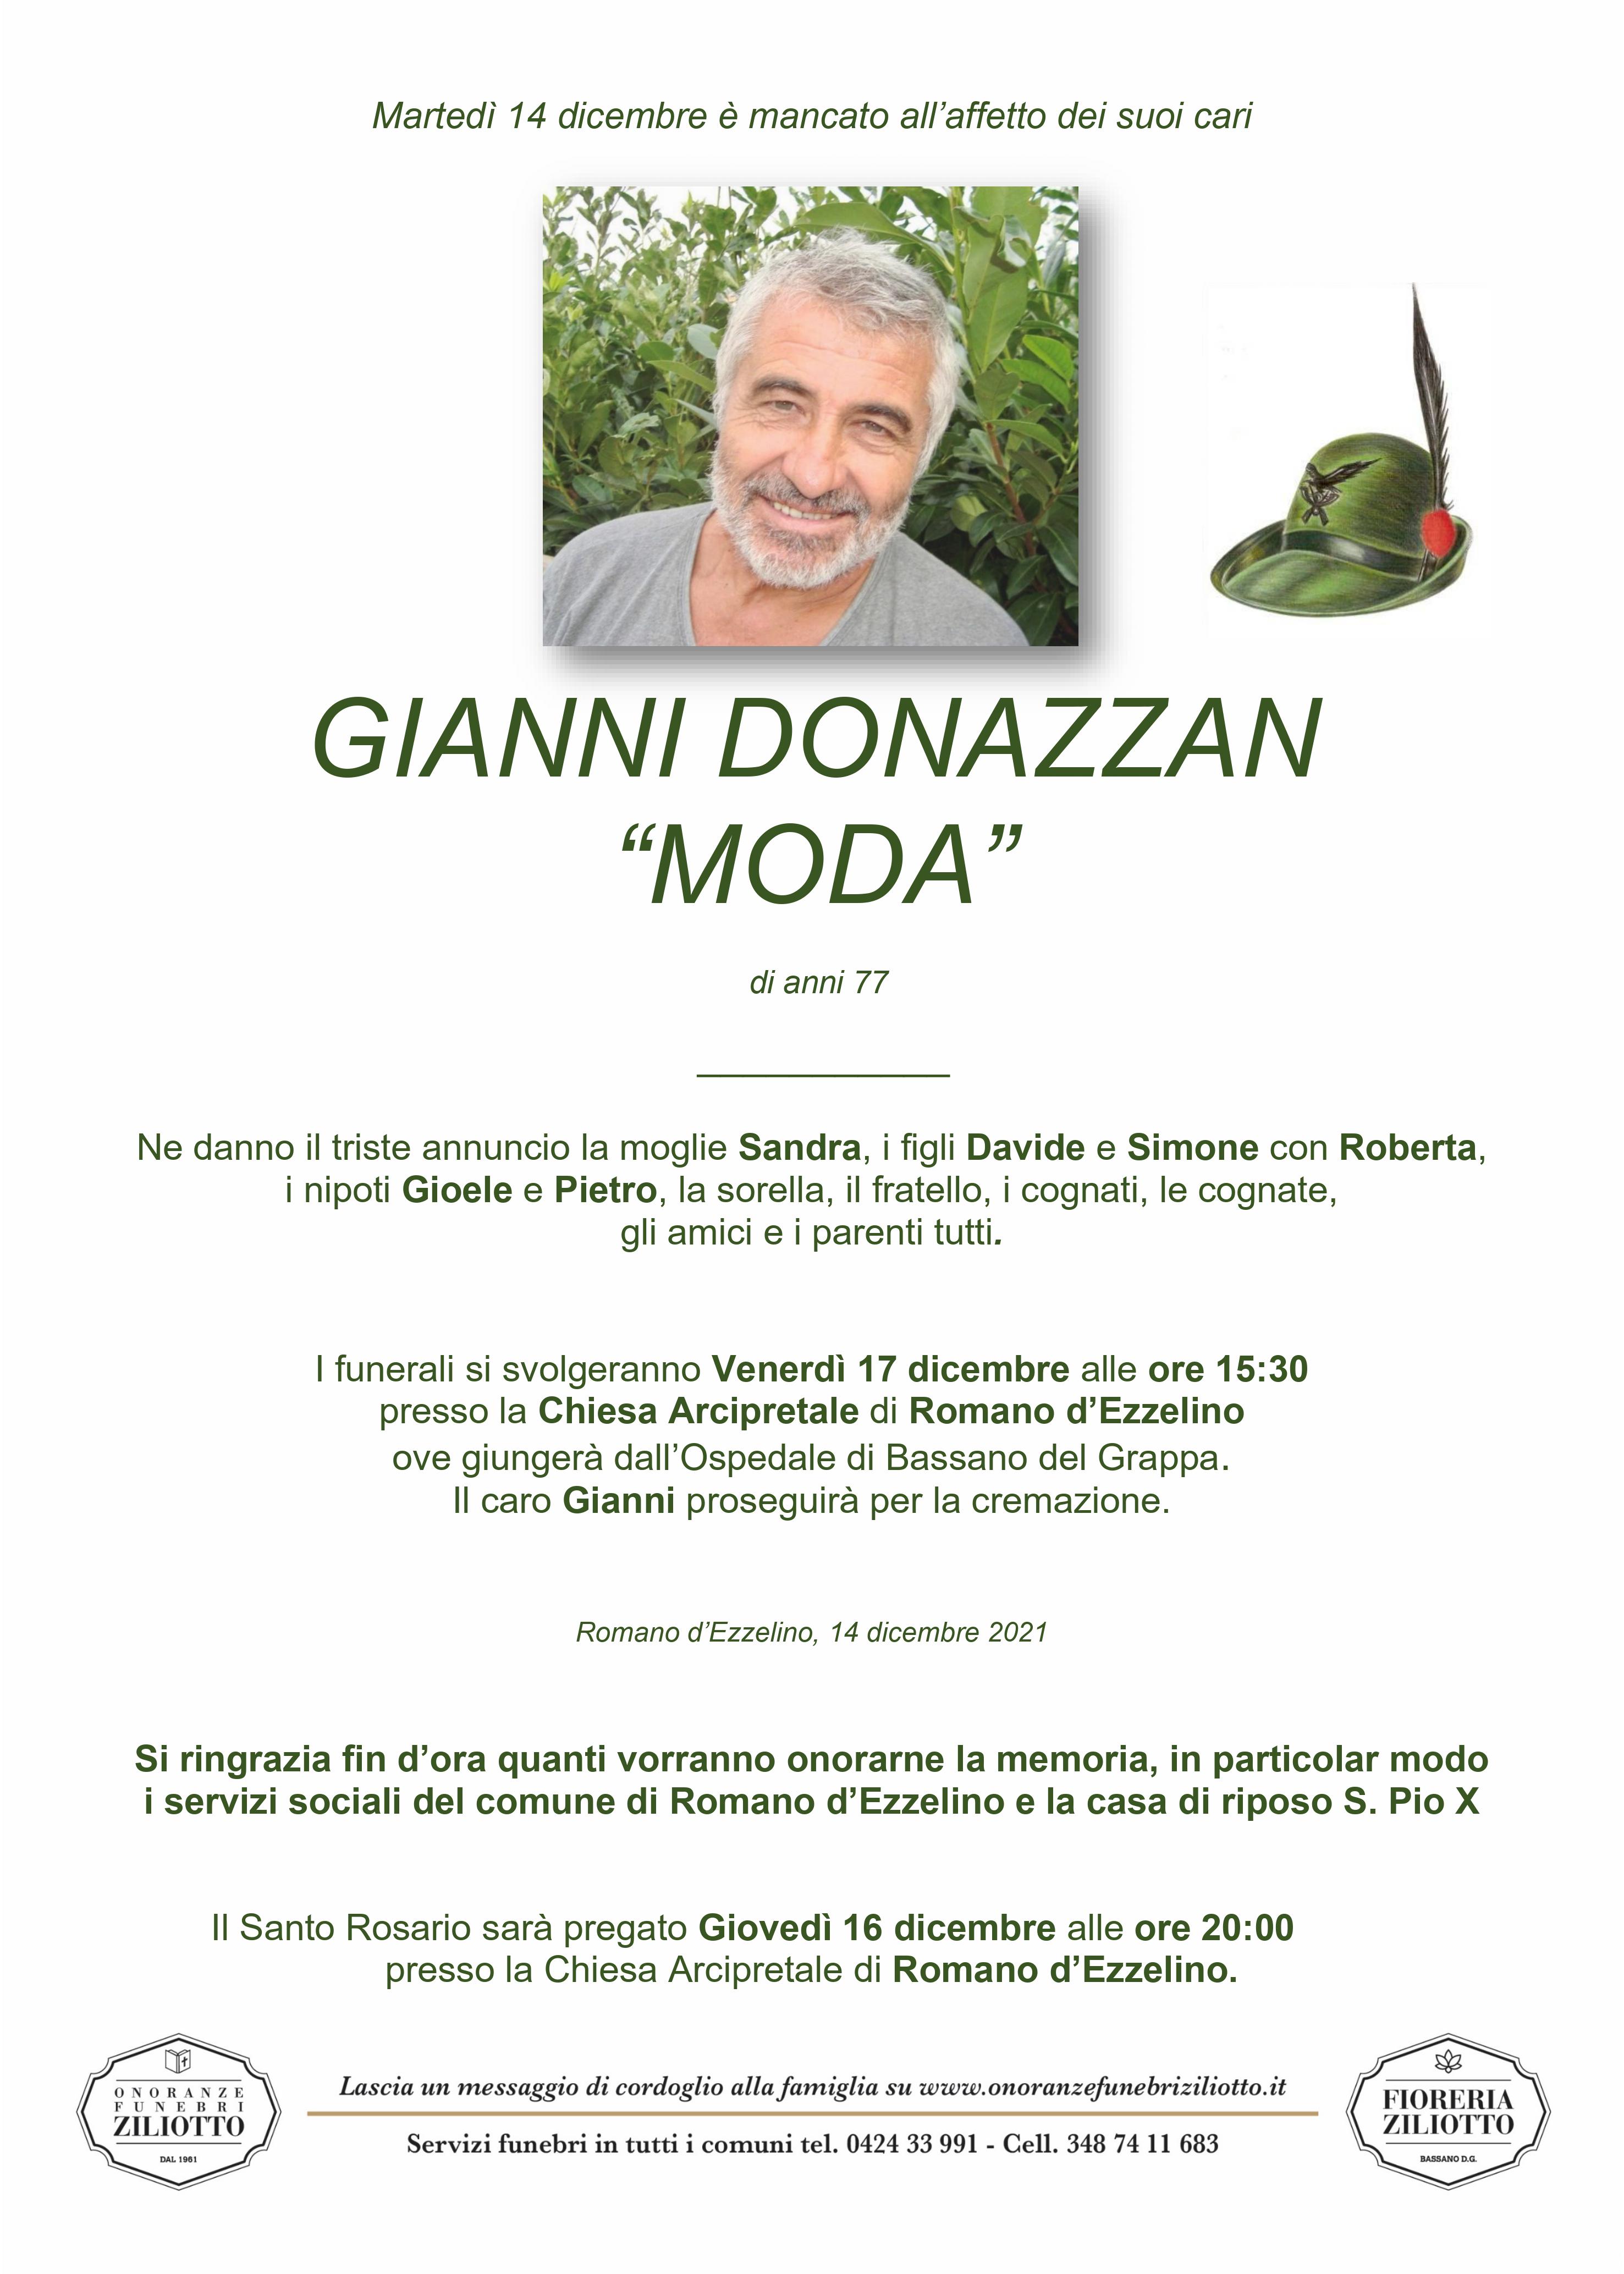 Gianni Donazzan - 77 anni - Romano d' Ezzelino